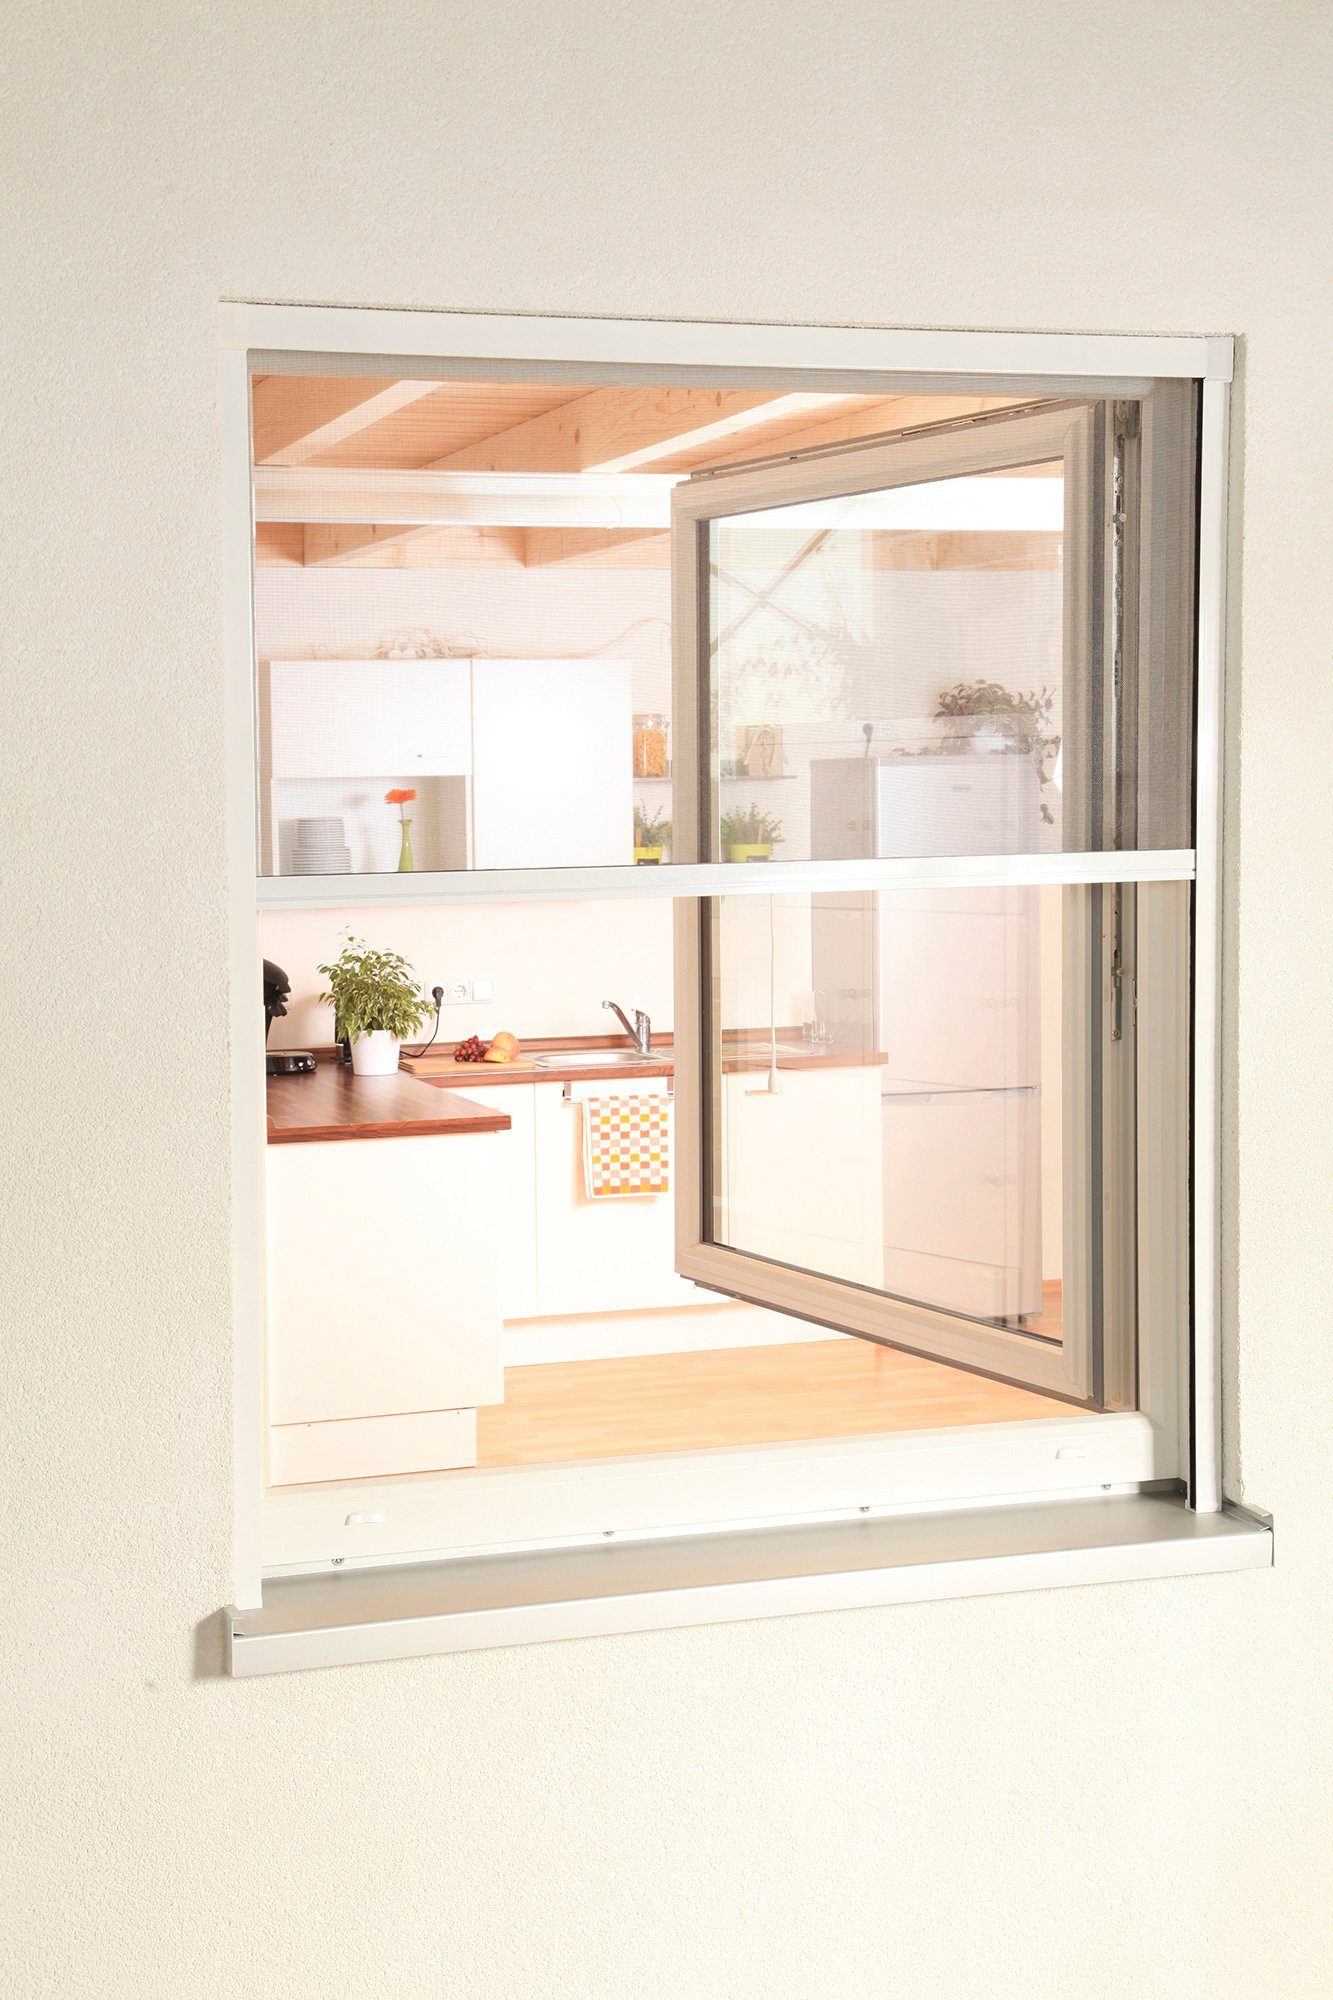 Insektenschutzrollo SMART, hecht international, transparent, verschraubt, für Fenster, weiß/anthrazit, BxH: 100x160 cm